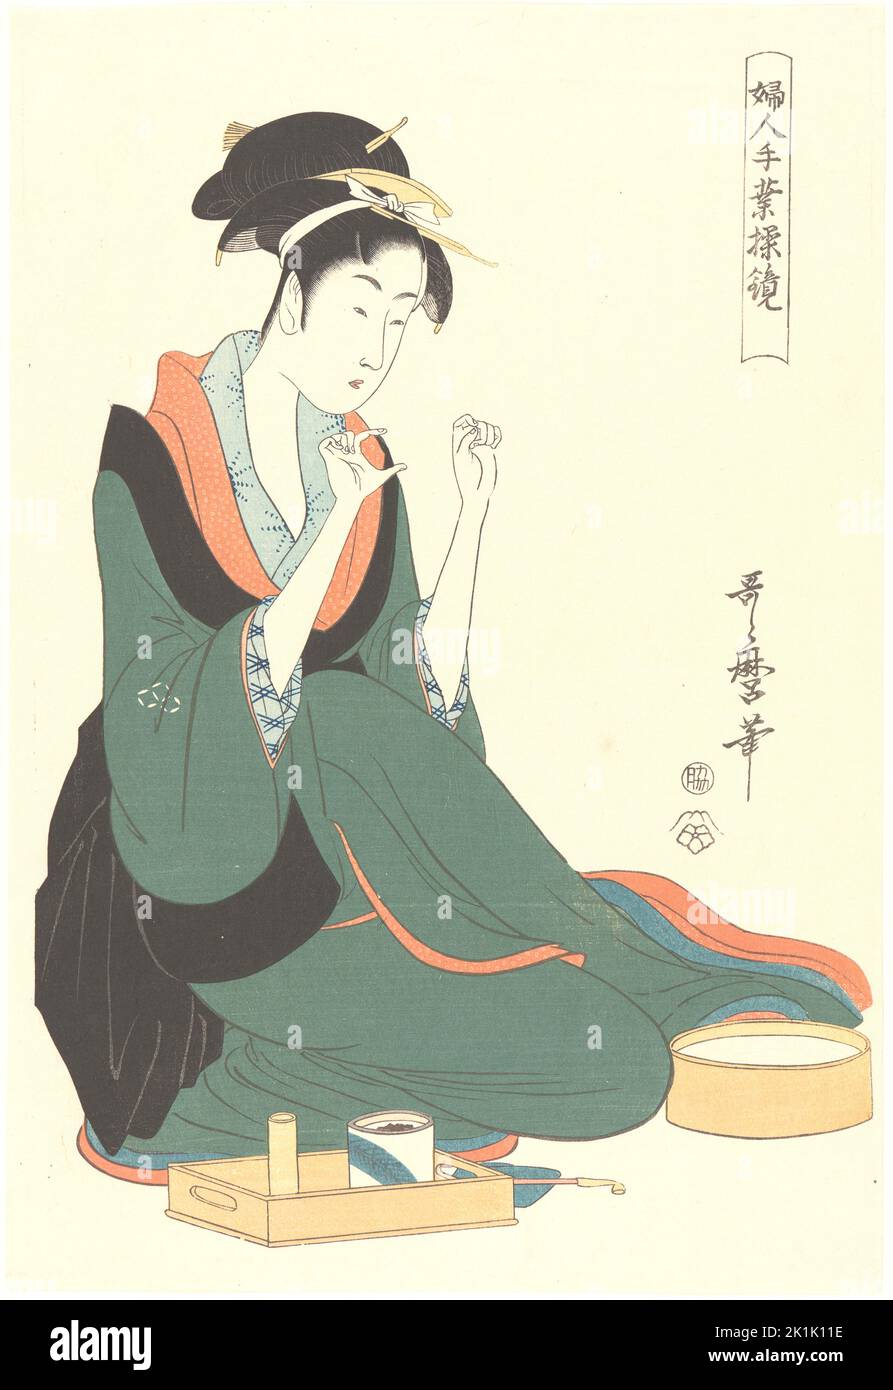 Utamaro Kitagawa - Femme avec fil - c1806 Banque D'Images